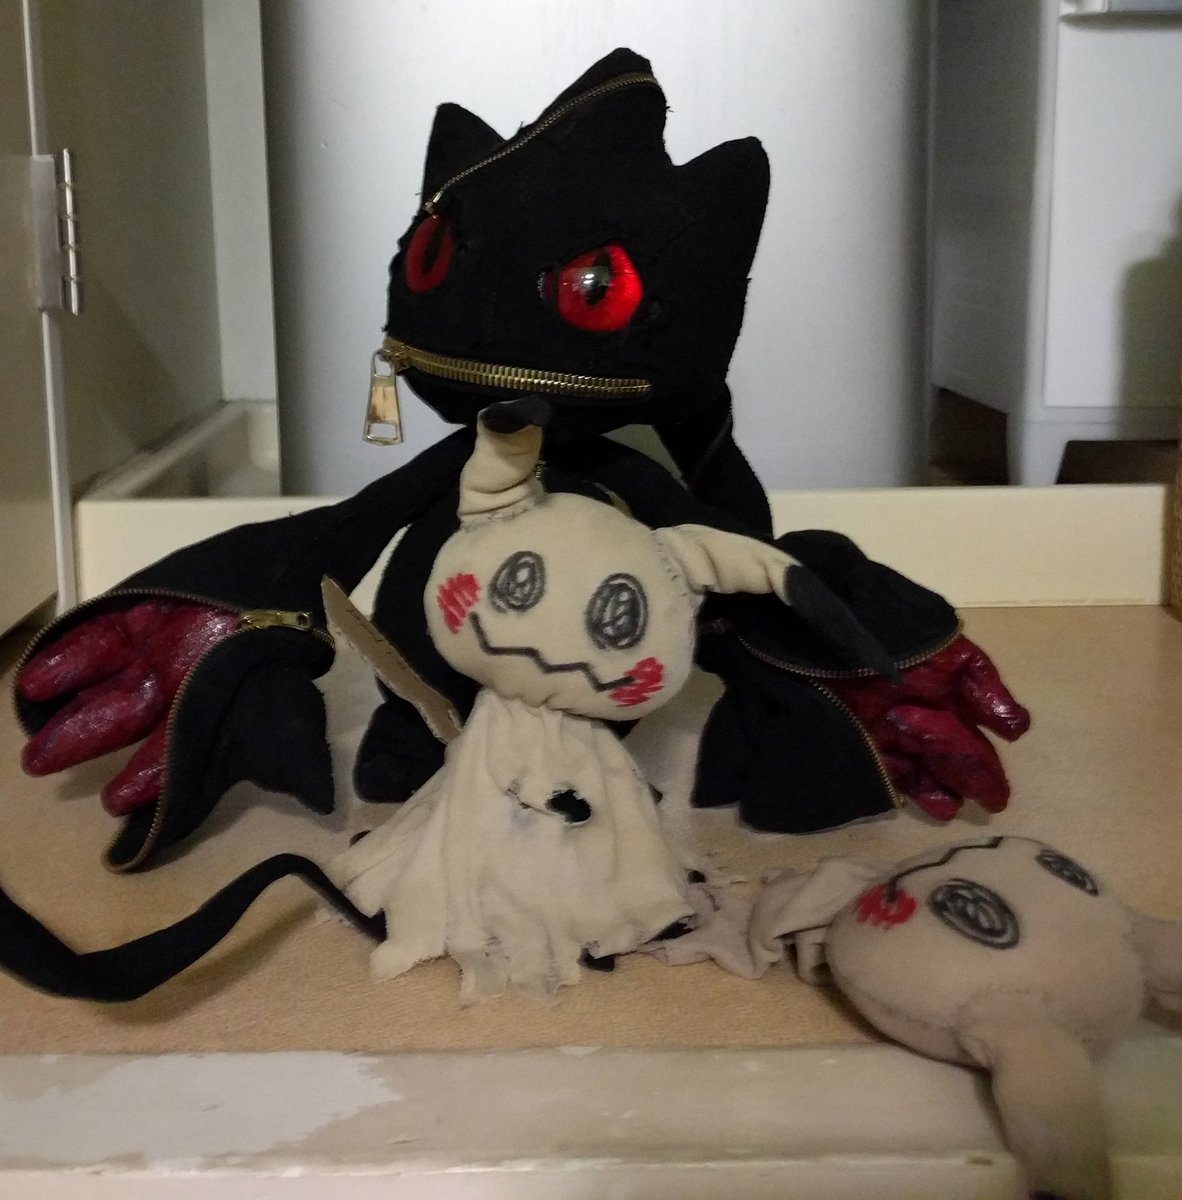 たかさおじさん No Twitter 今回のミミッキュも メガジュペッタ人形を作ってくれた ノリオさん Norioooooi による作品 布製なのがそのままリアルな質感なポケモンシリーズ